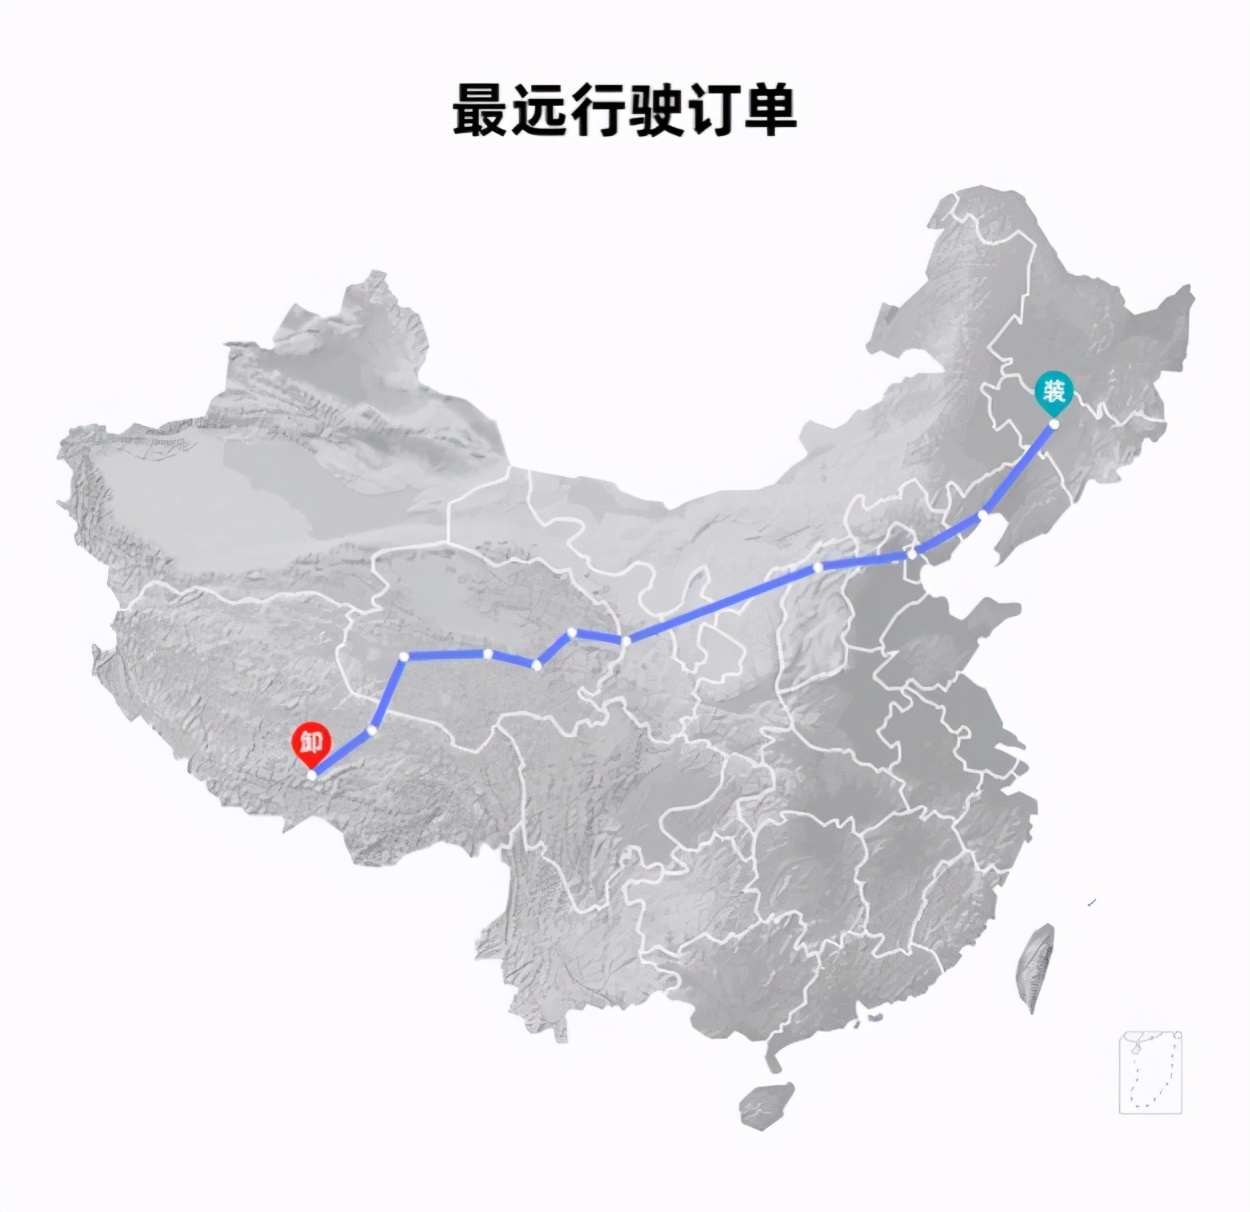 福佑卡车发布大数据 物流数字化描绘中国卡车司机群像